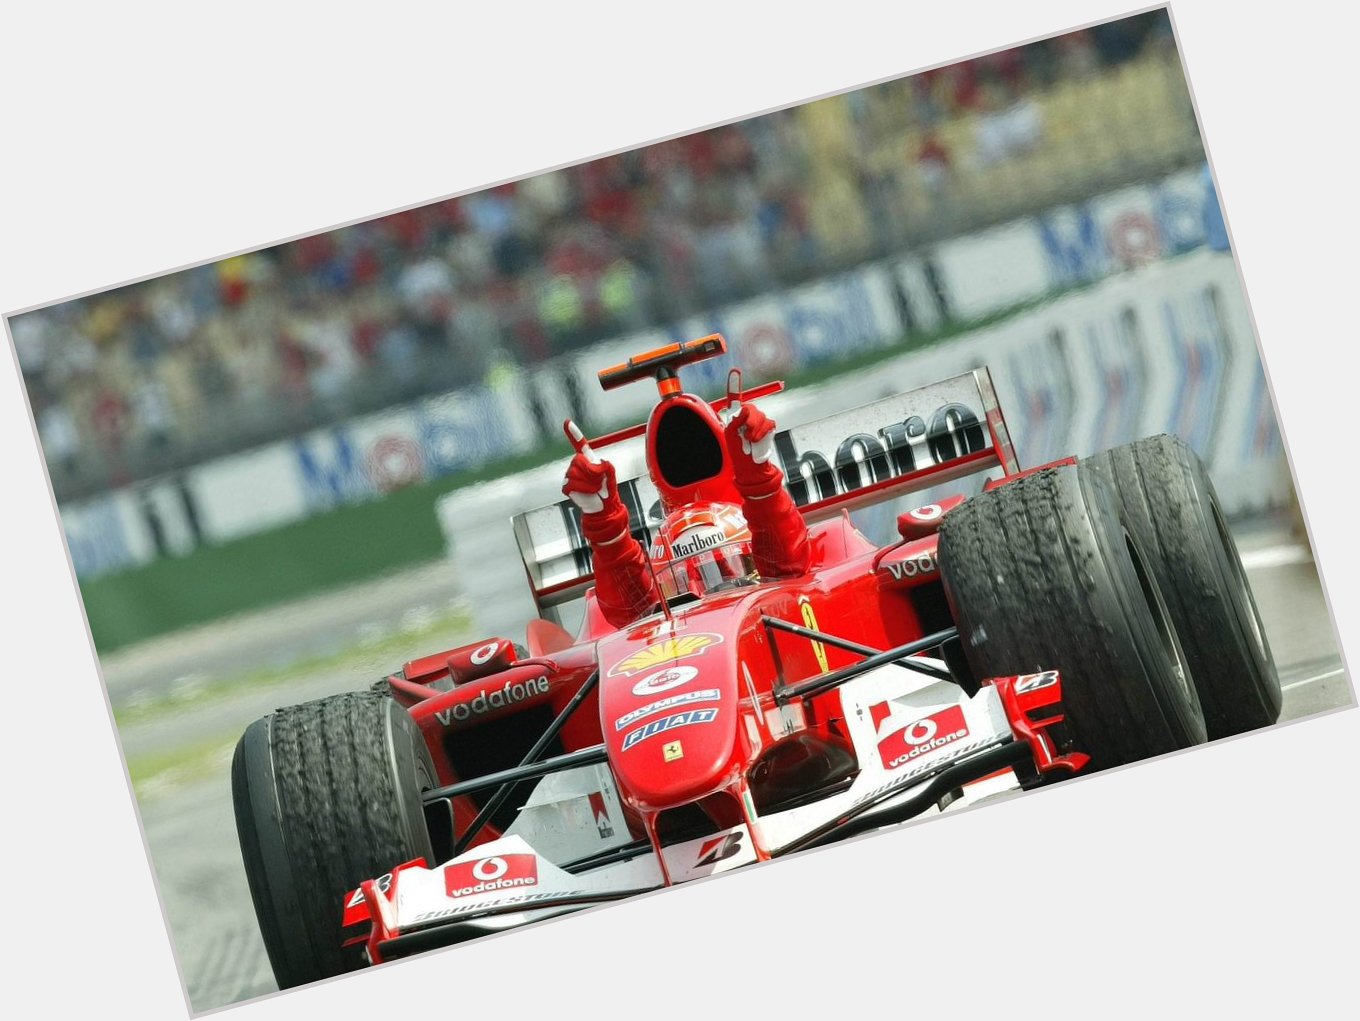 Happy Birthday to the og F1 GOAT, Michael Schumacher! 